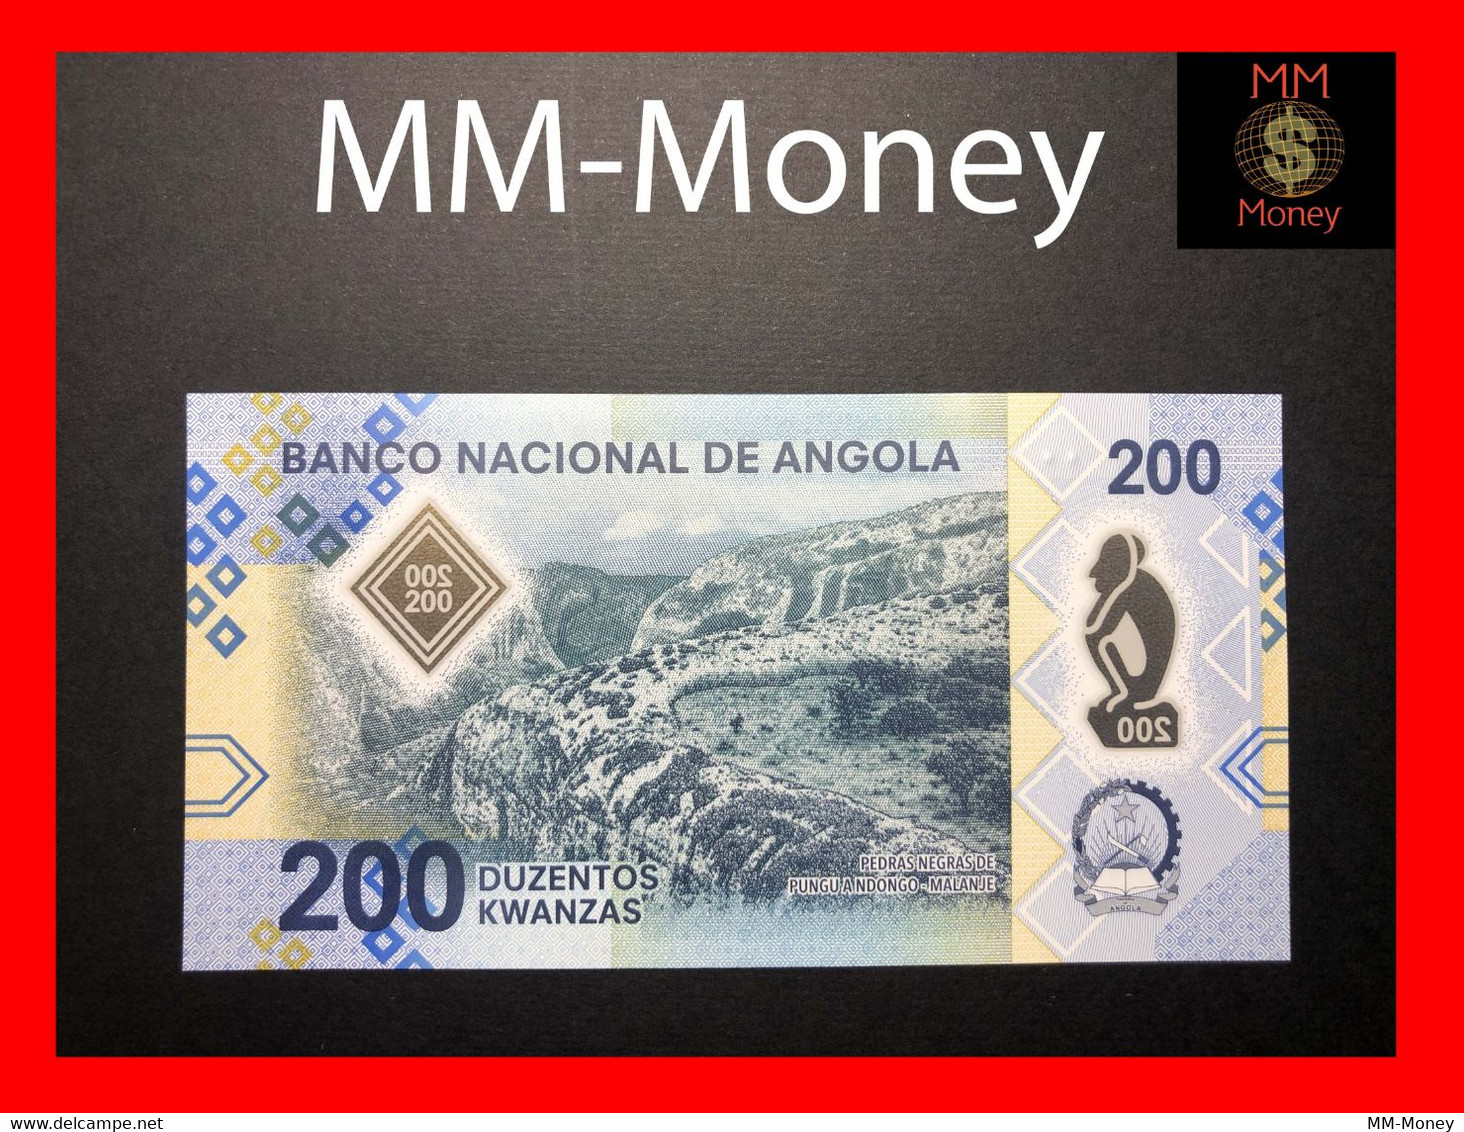 ANGOLA 200 Kwanzas  4.2020  P. 160  New   Polymer UNC   [MM-Money] - Angola